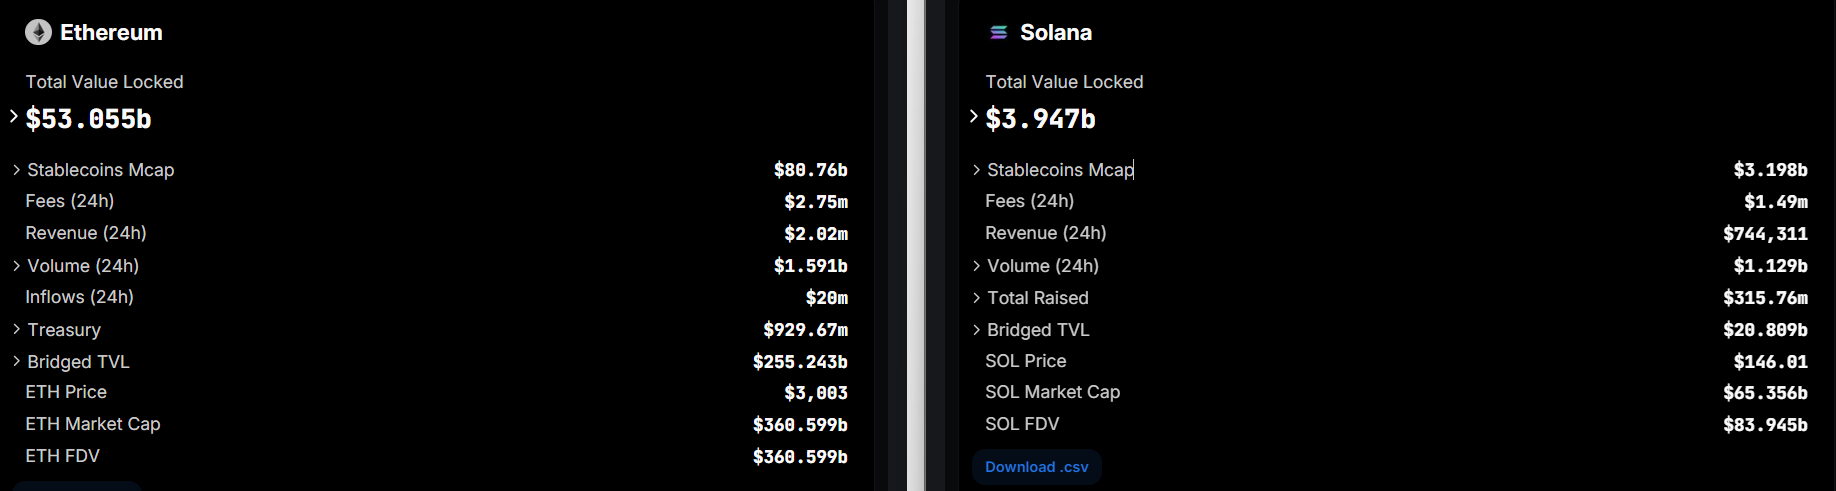 Solana có thể vượt mặt Ethereum về phí giao dịch trong vòng một tuần: Báo cáo